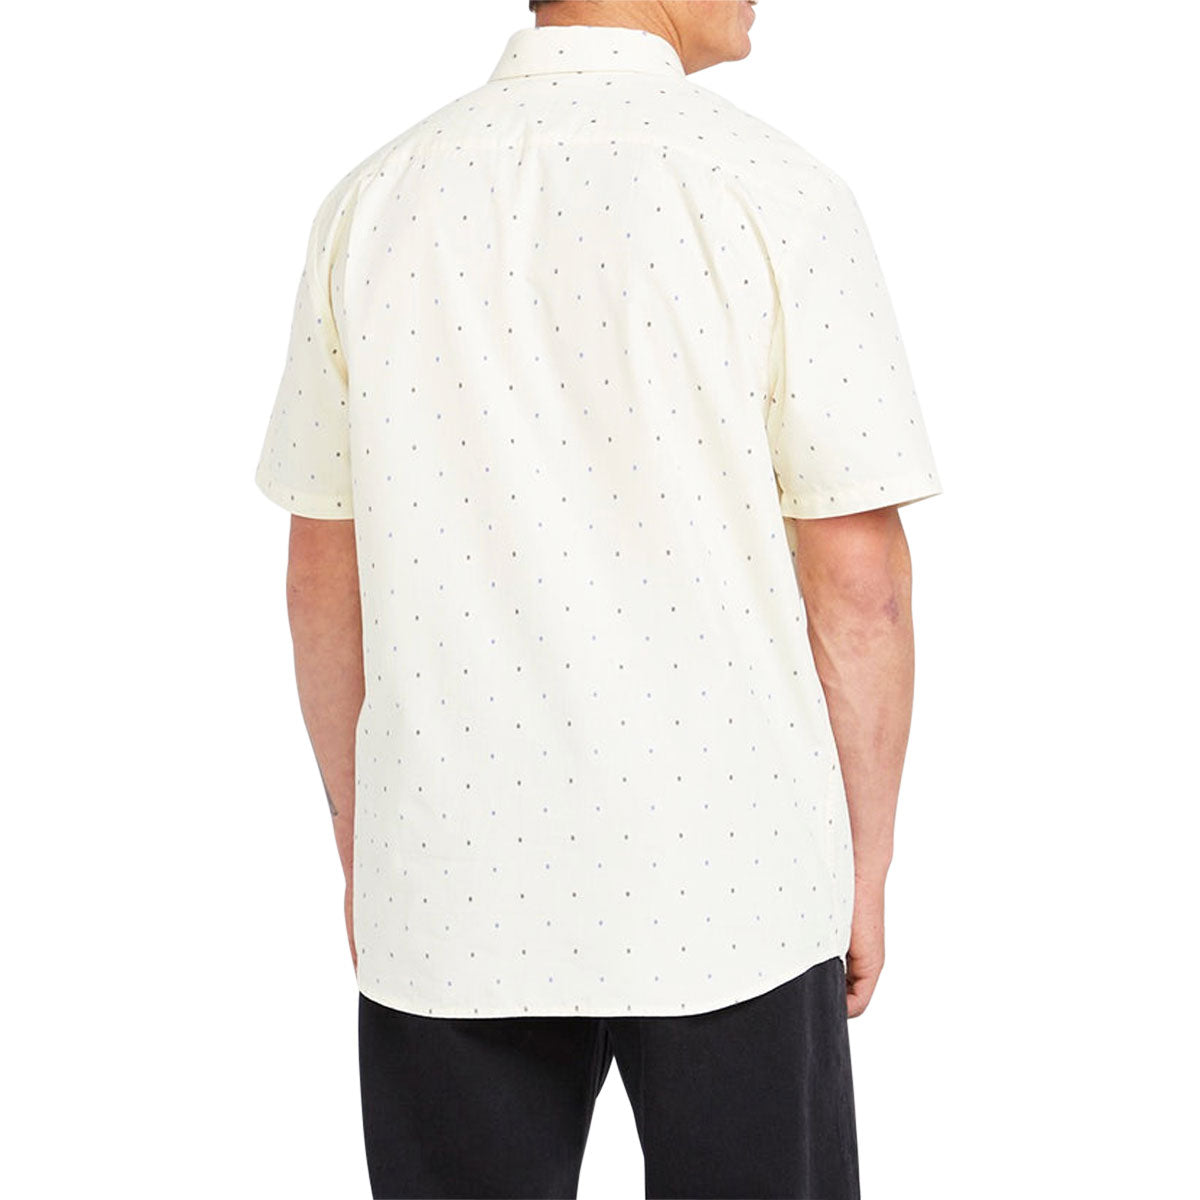 Volcom Honestone Woven Shirt - Off White image 2